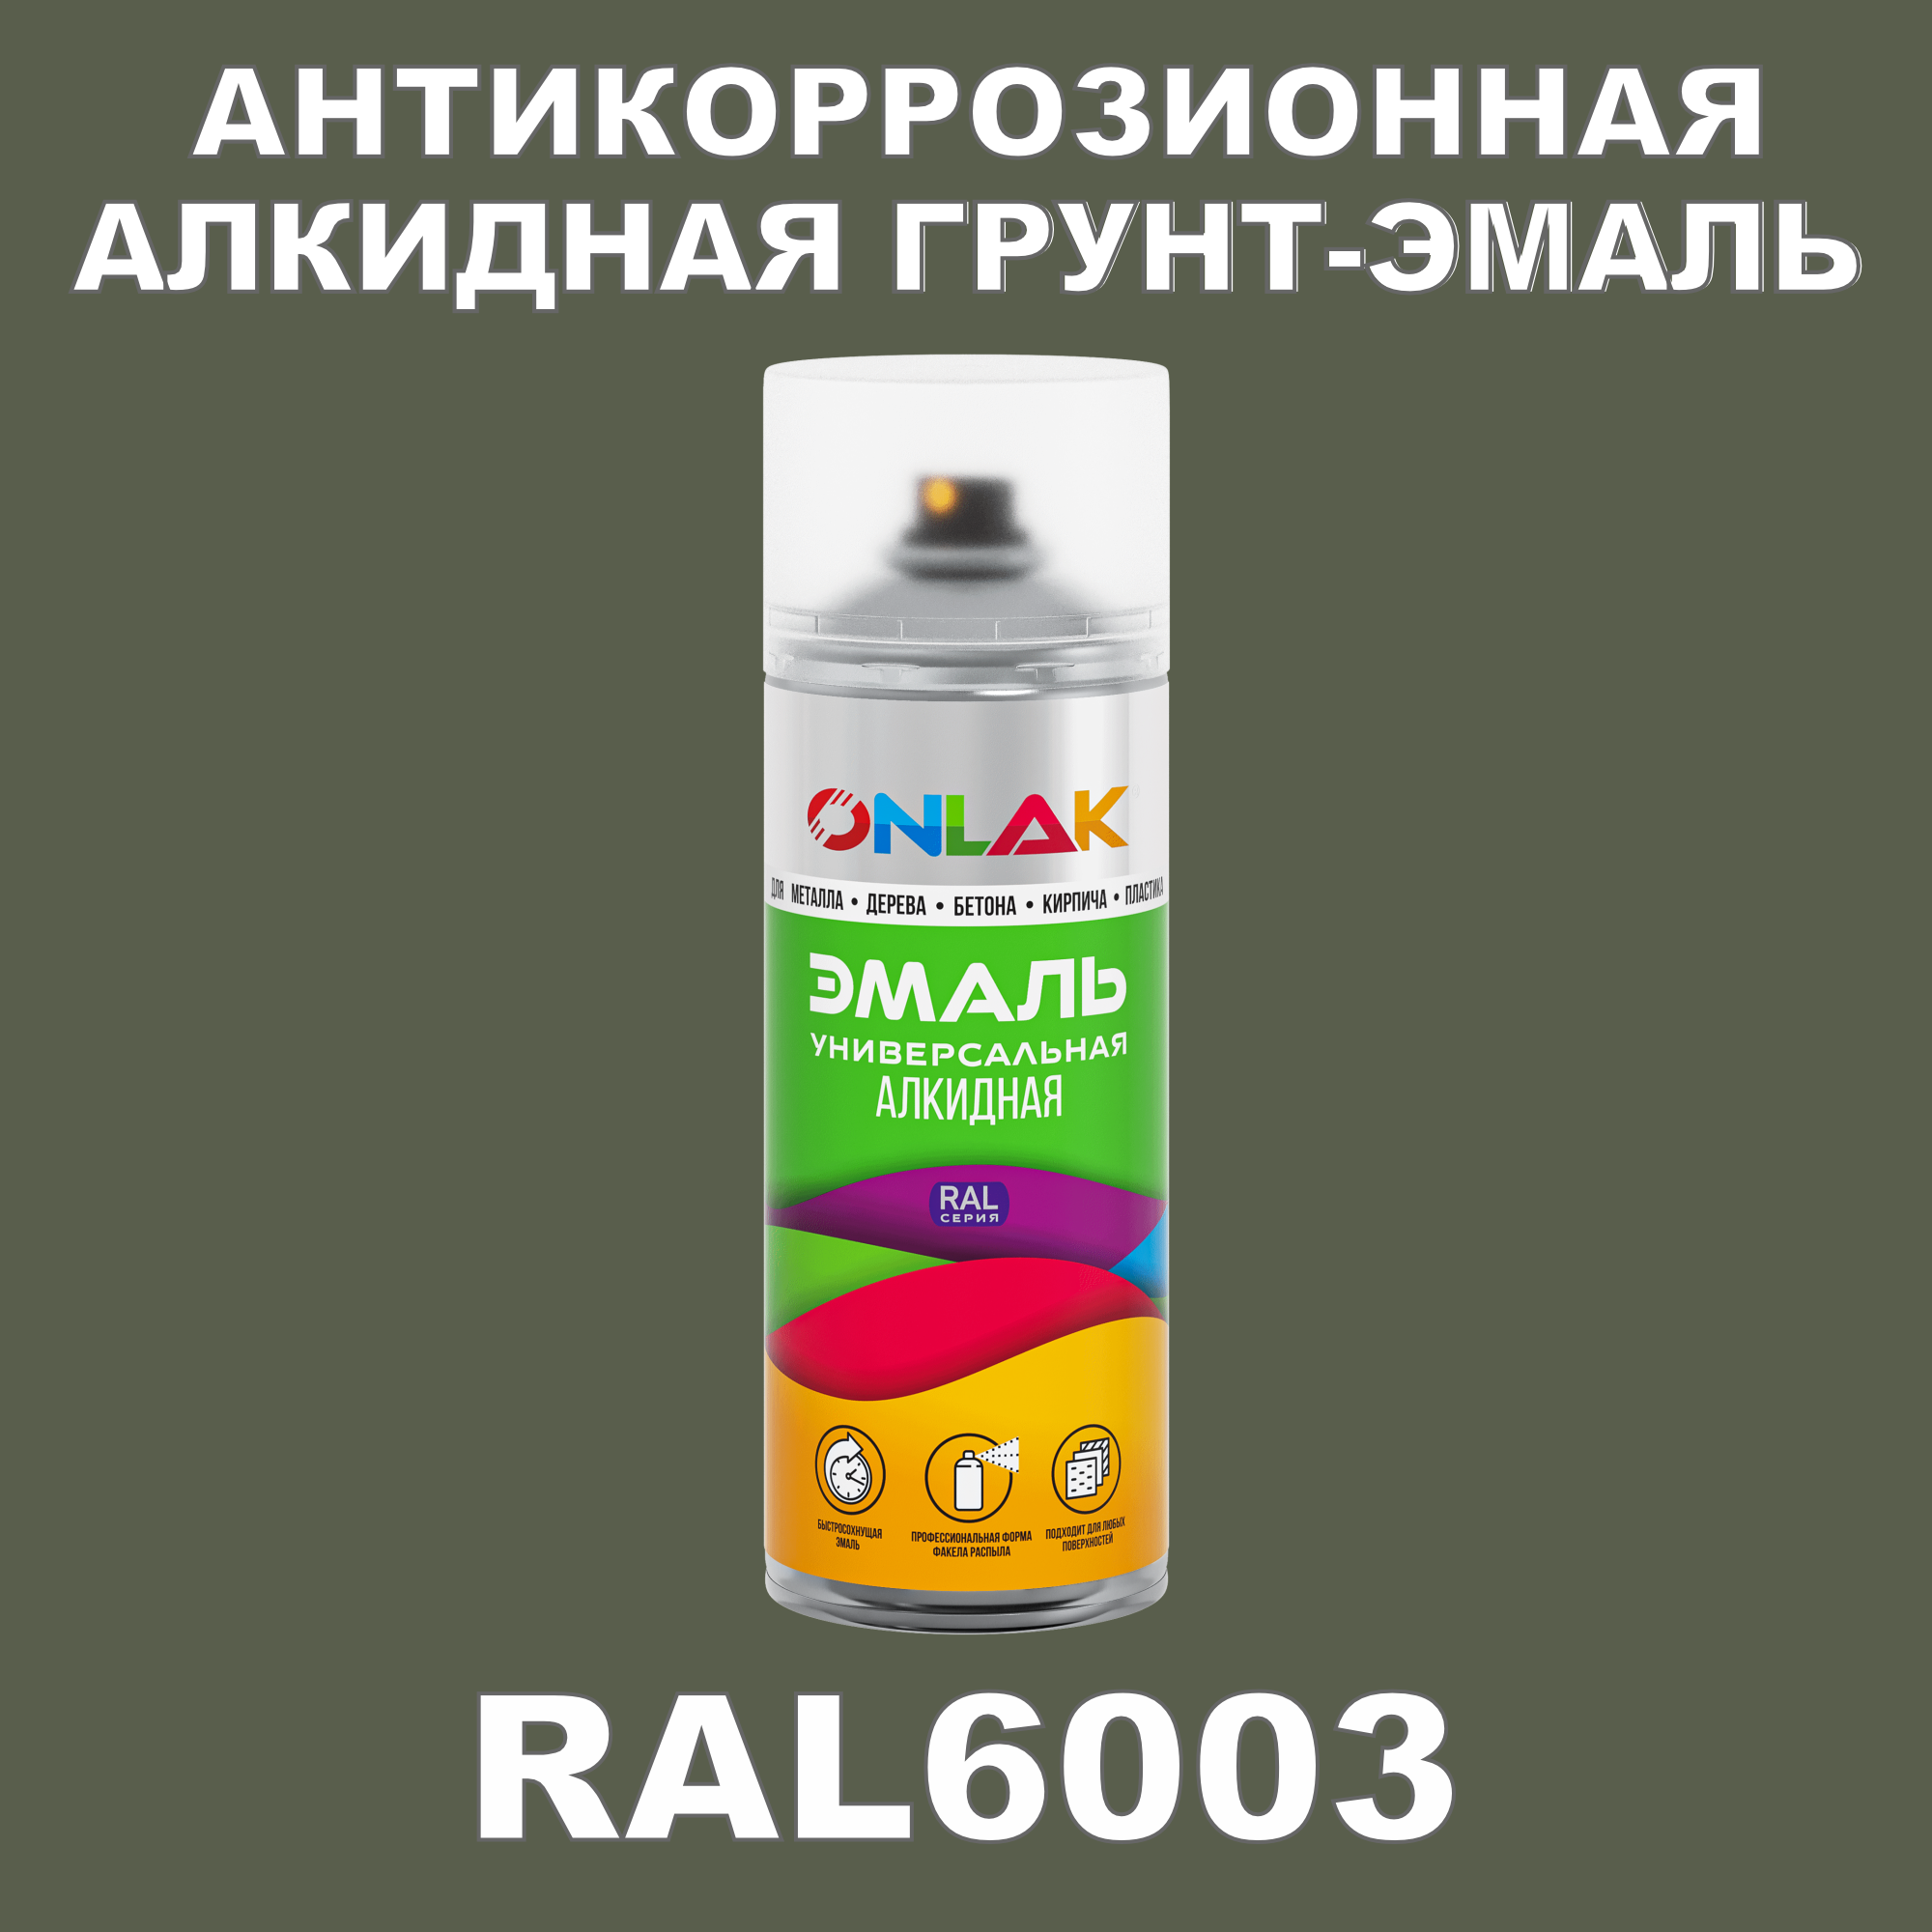 Антикоррозионная грунт-эмаль ONLAK RAL6003 полуматовая для металла и защиты от ржавчины